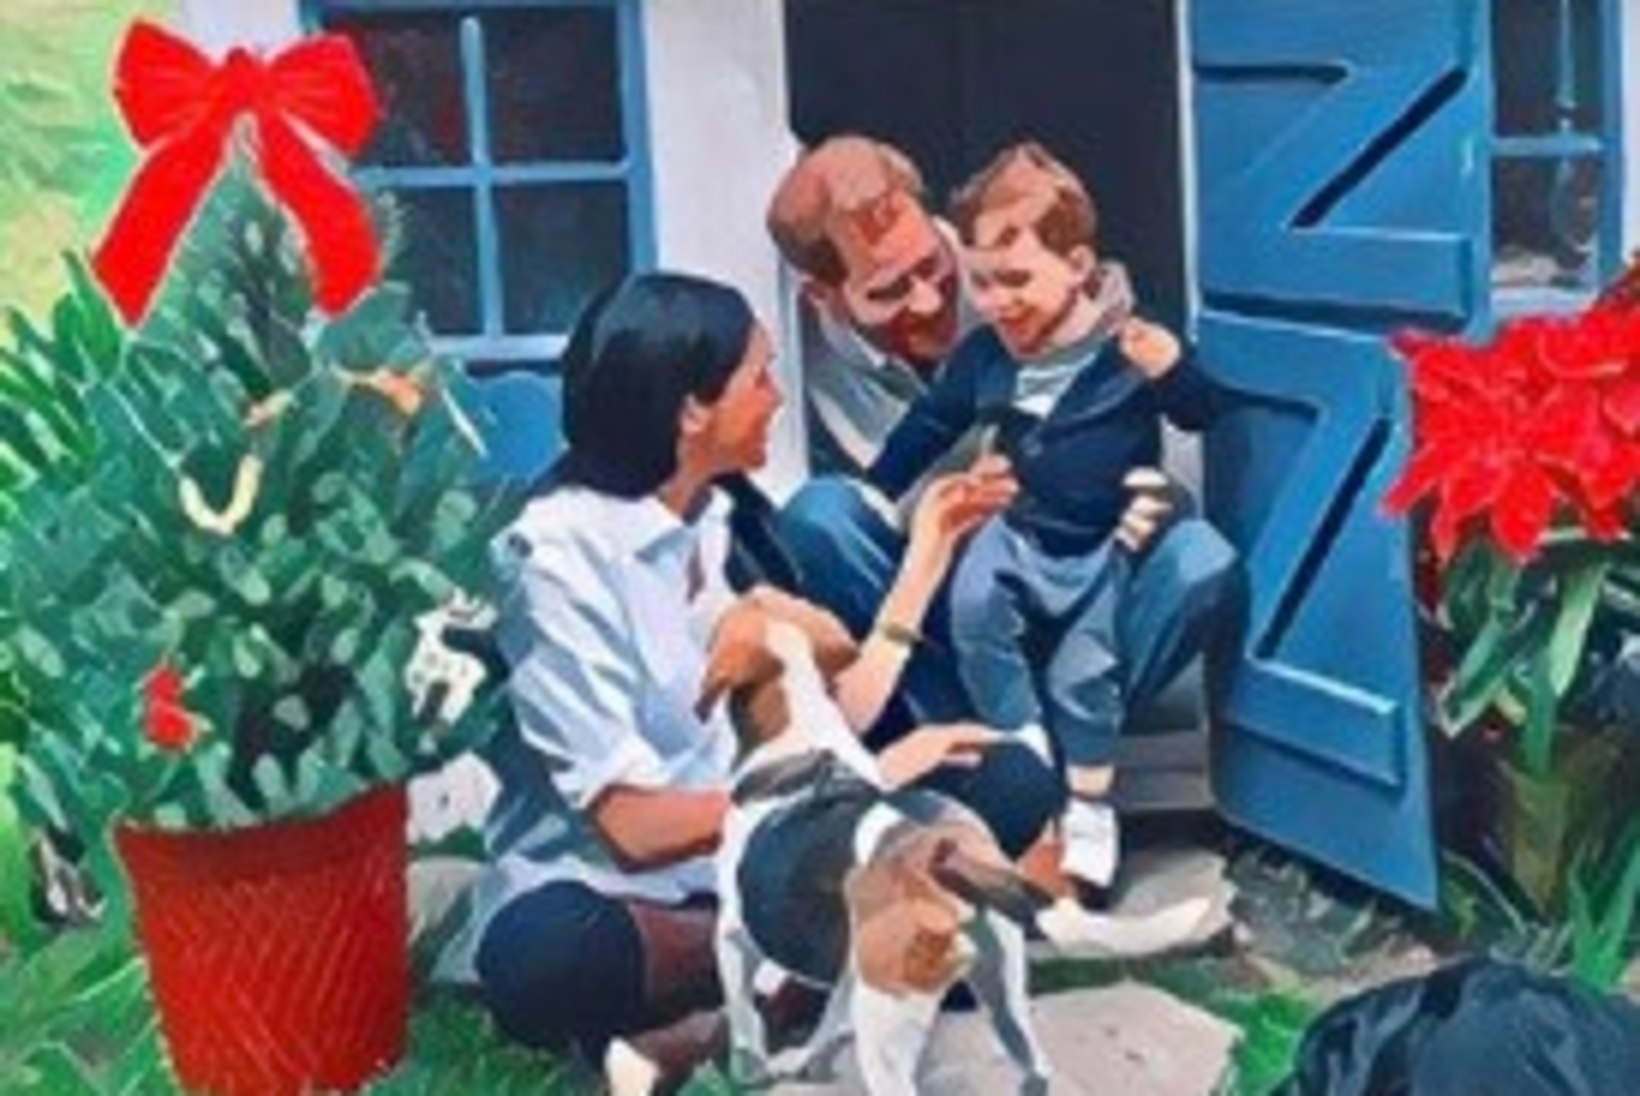 Sellise jõulukaardi saatsid Harry ja Meghan tänavu – pildil on ka pisi-Archie!